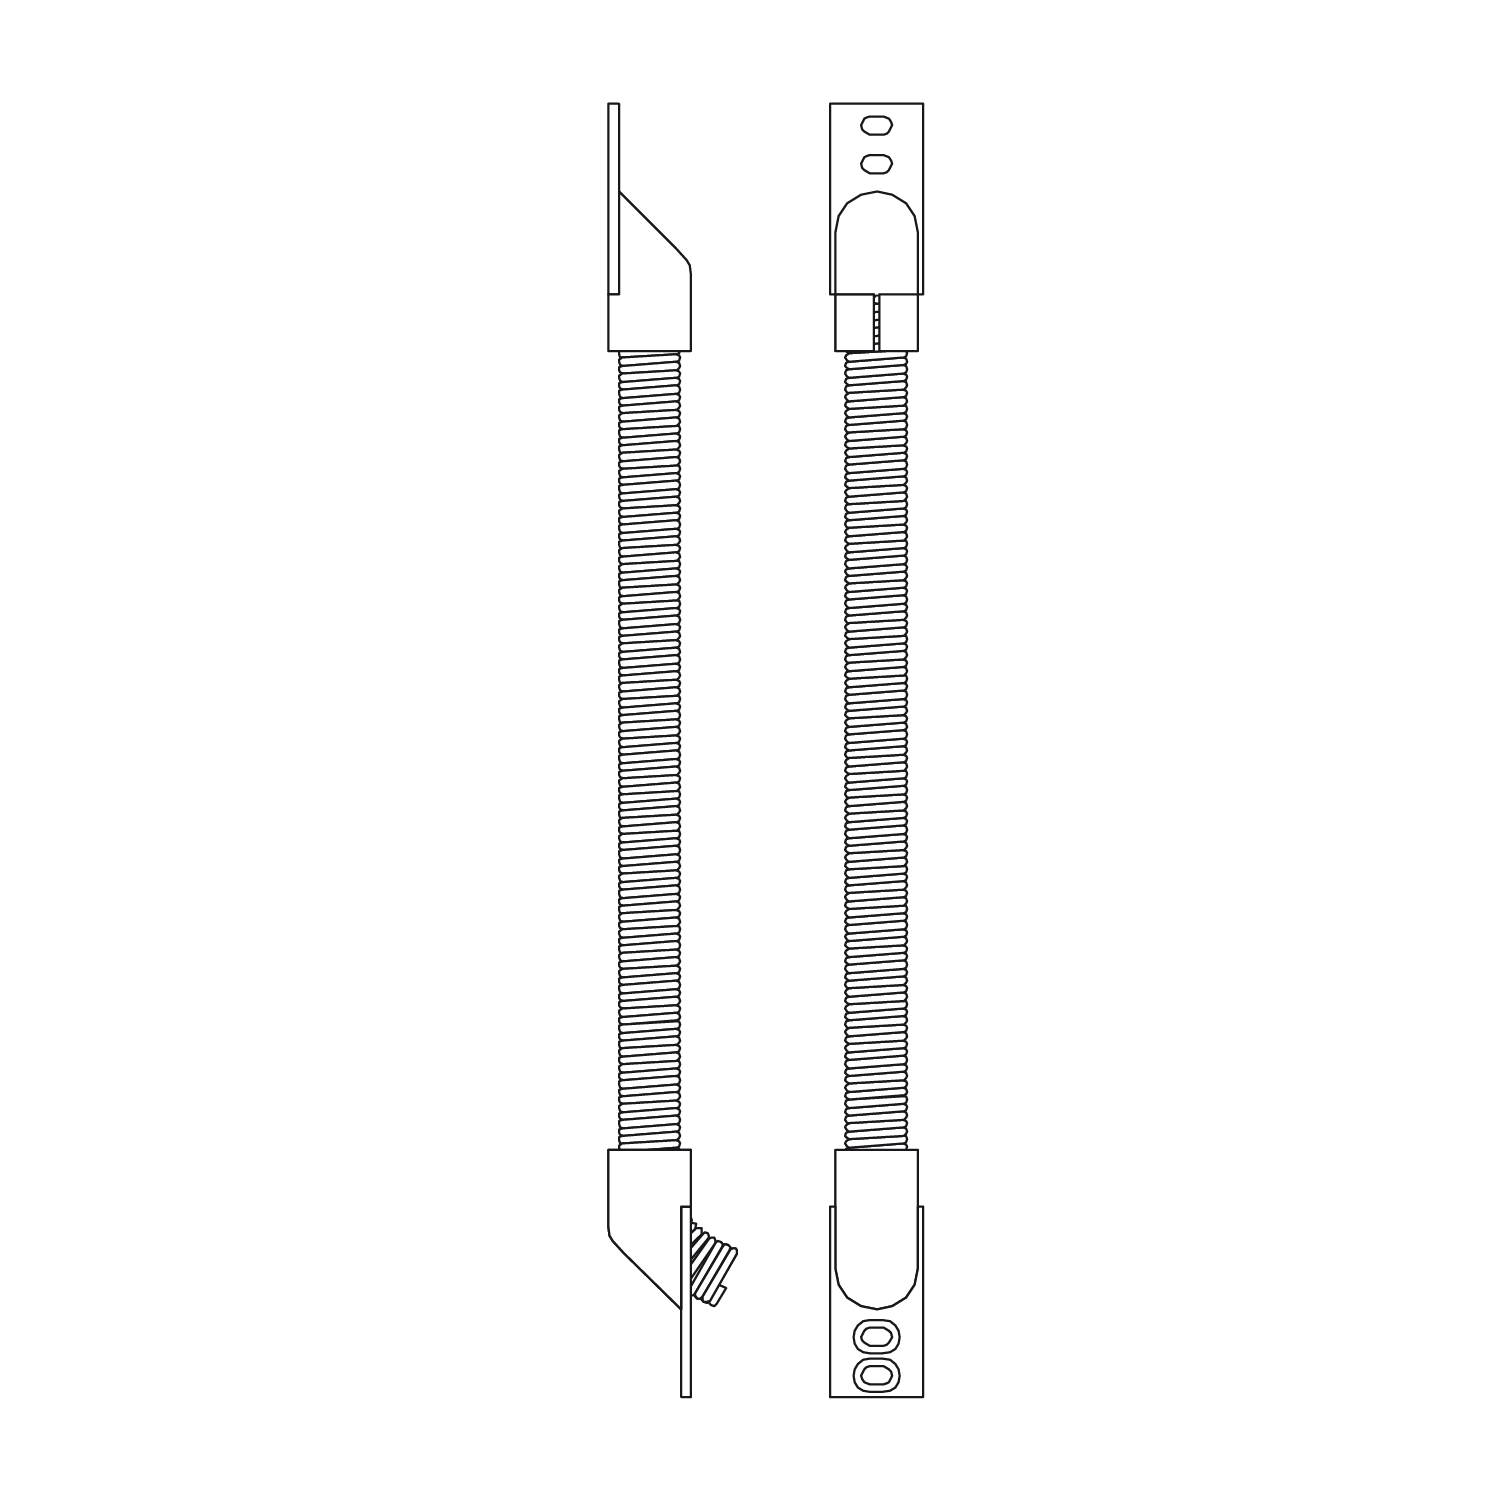 GfS Kabelspirale KS-370 für Metalltüren und -fenster